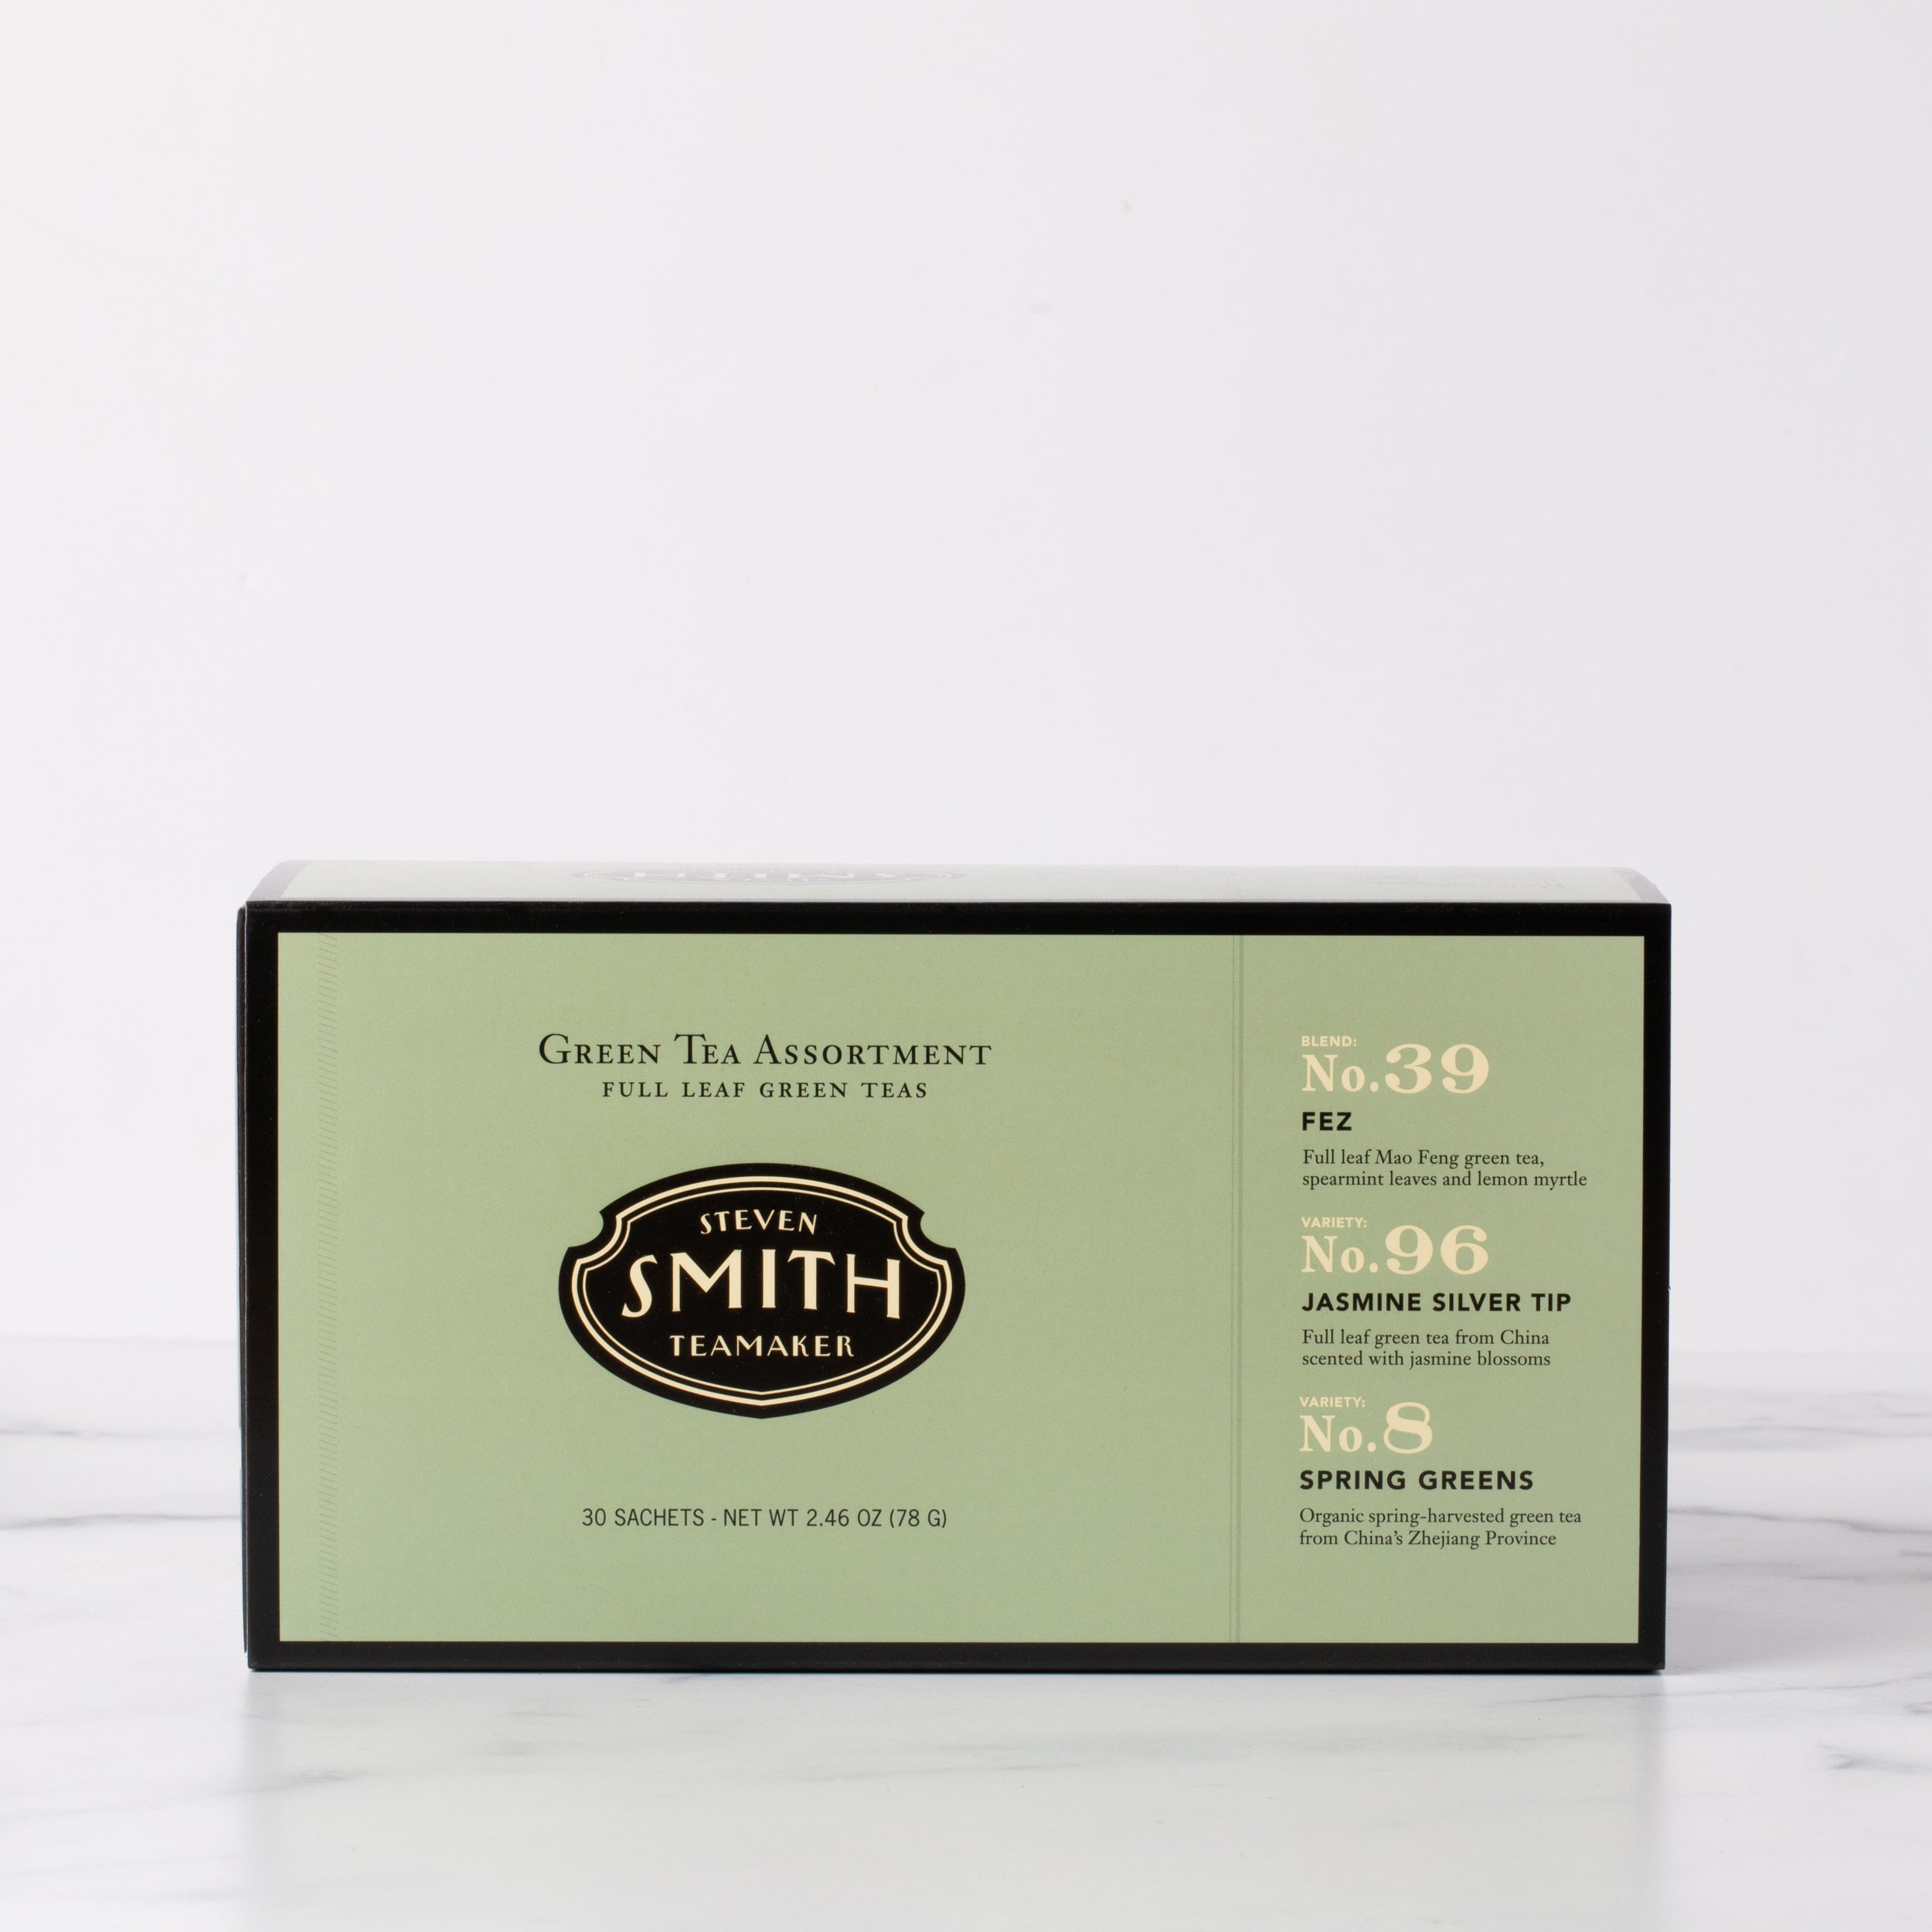 Smith Tea - Moment of Zen Matcha Kit, Gift Bundle - Smith Exclusive